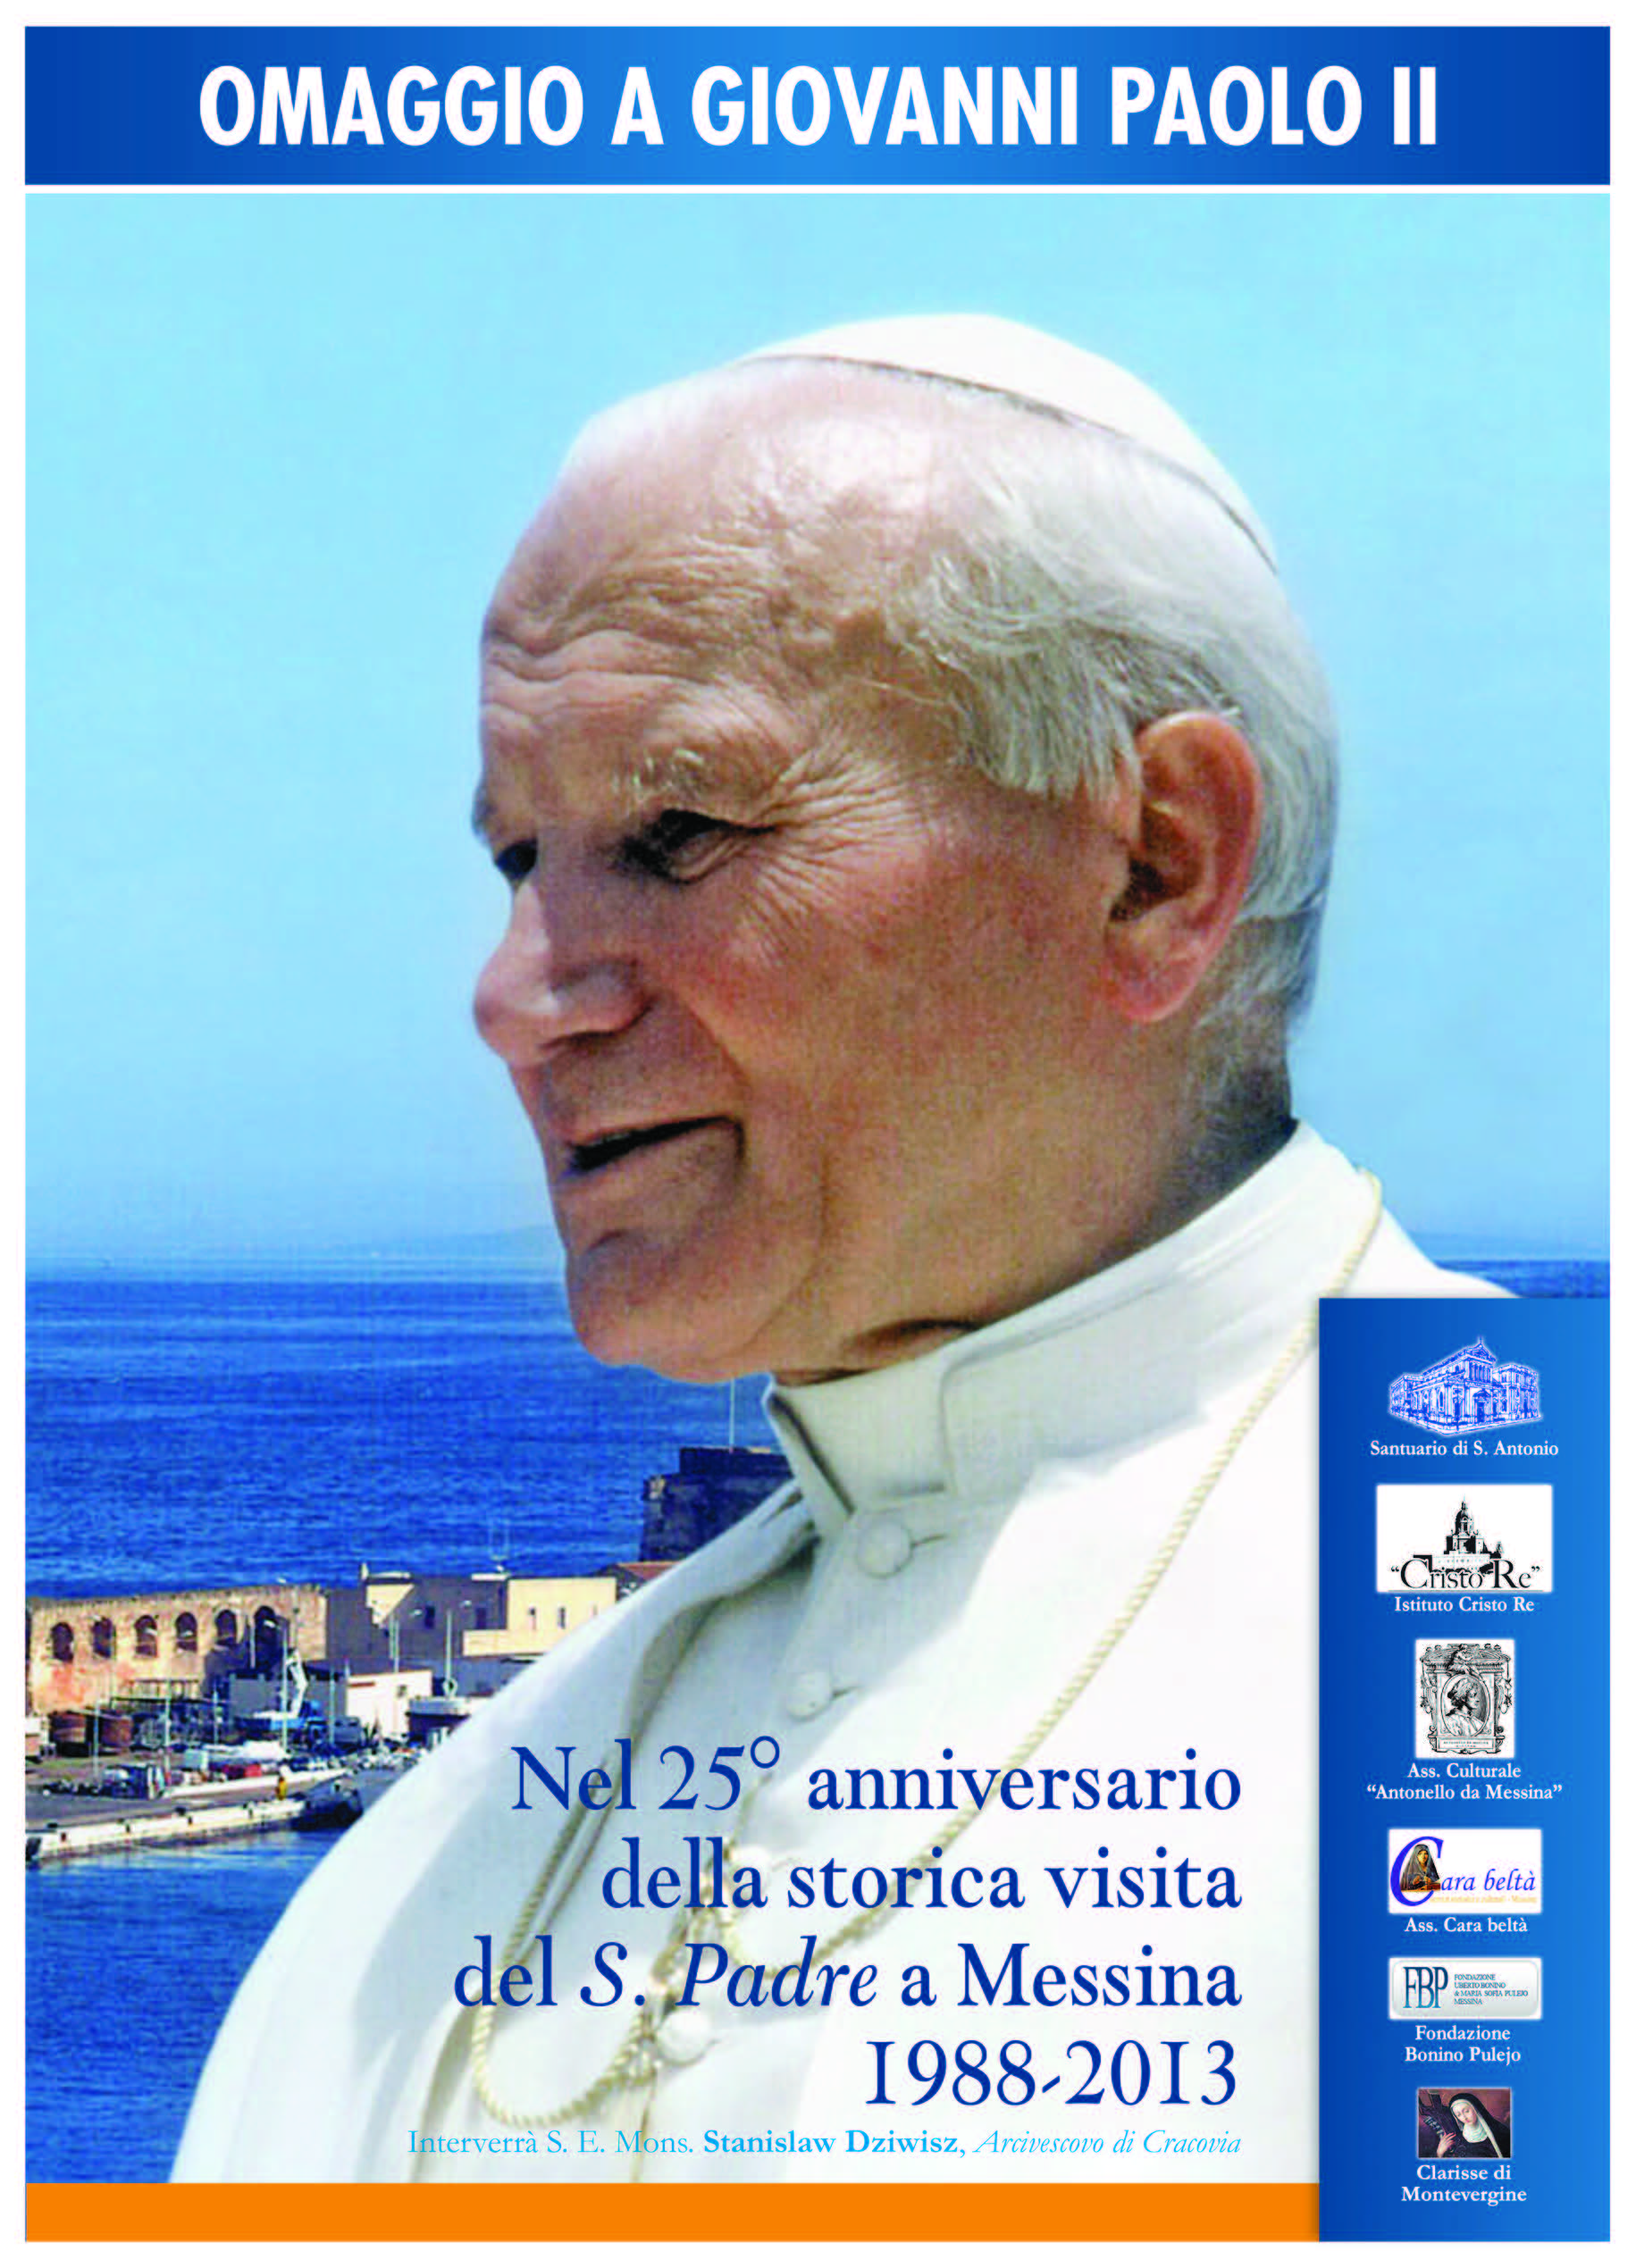 Omaggio a Giovanni Paolo II nel 25° anniversario dela sua visita